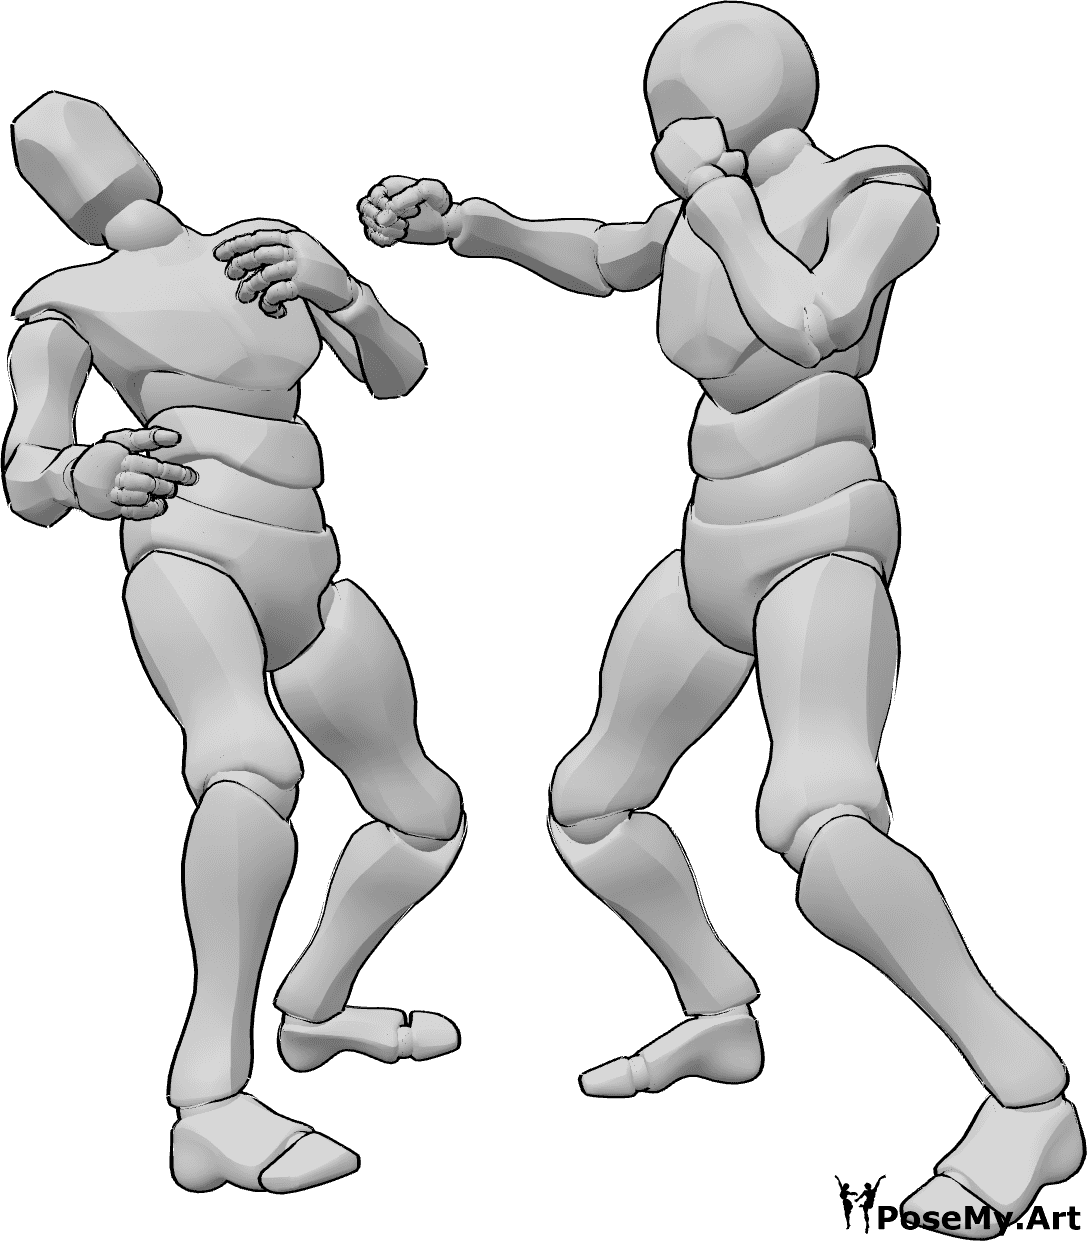 Riferimento alle pose- Posa di stendimento della scatola - Due uomini praticano il pugilato, uno dei due stende l'avversario con un gancio destro.